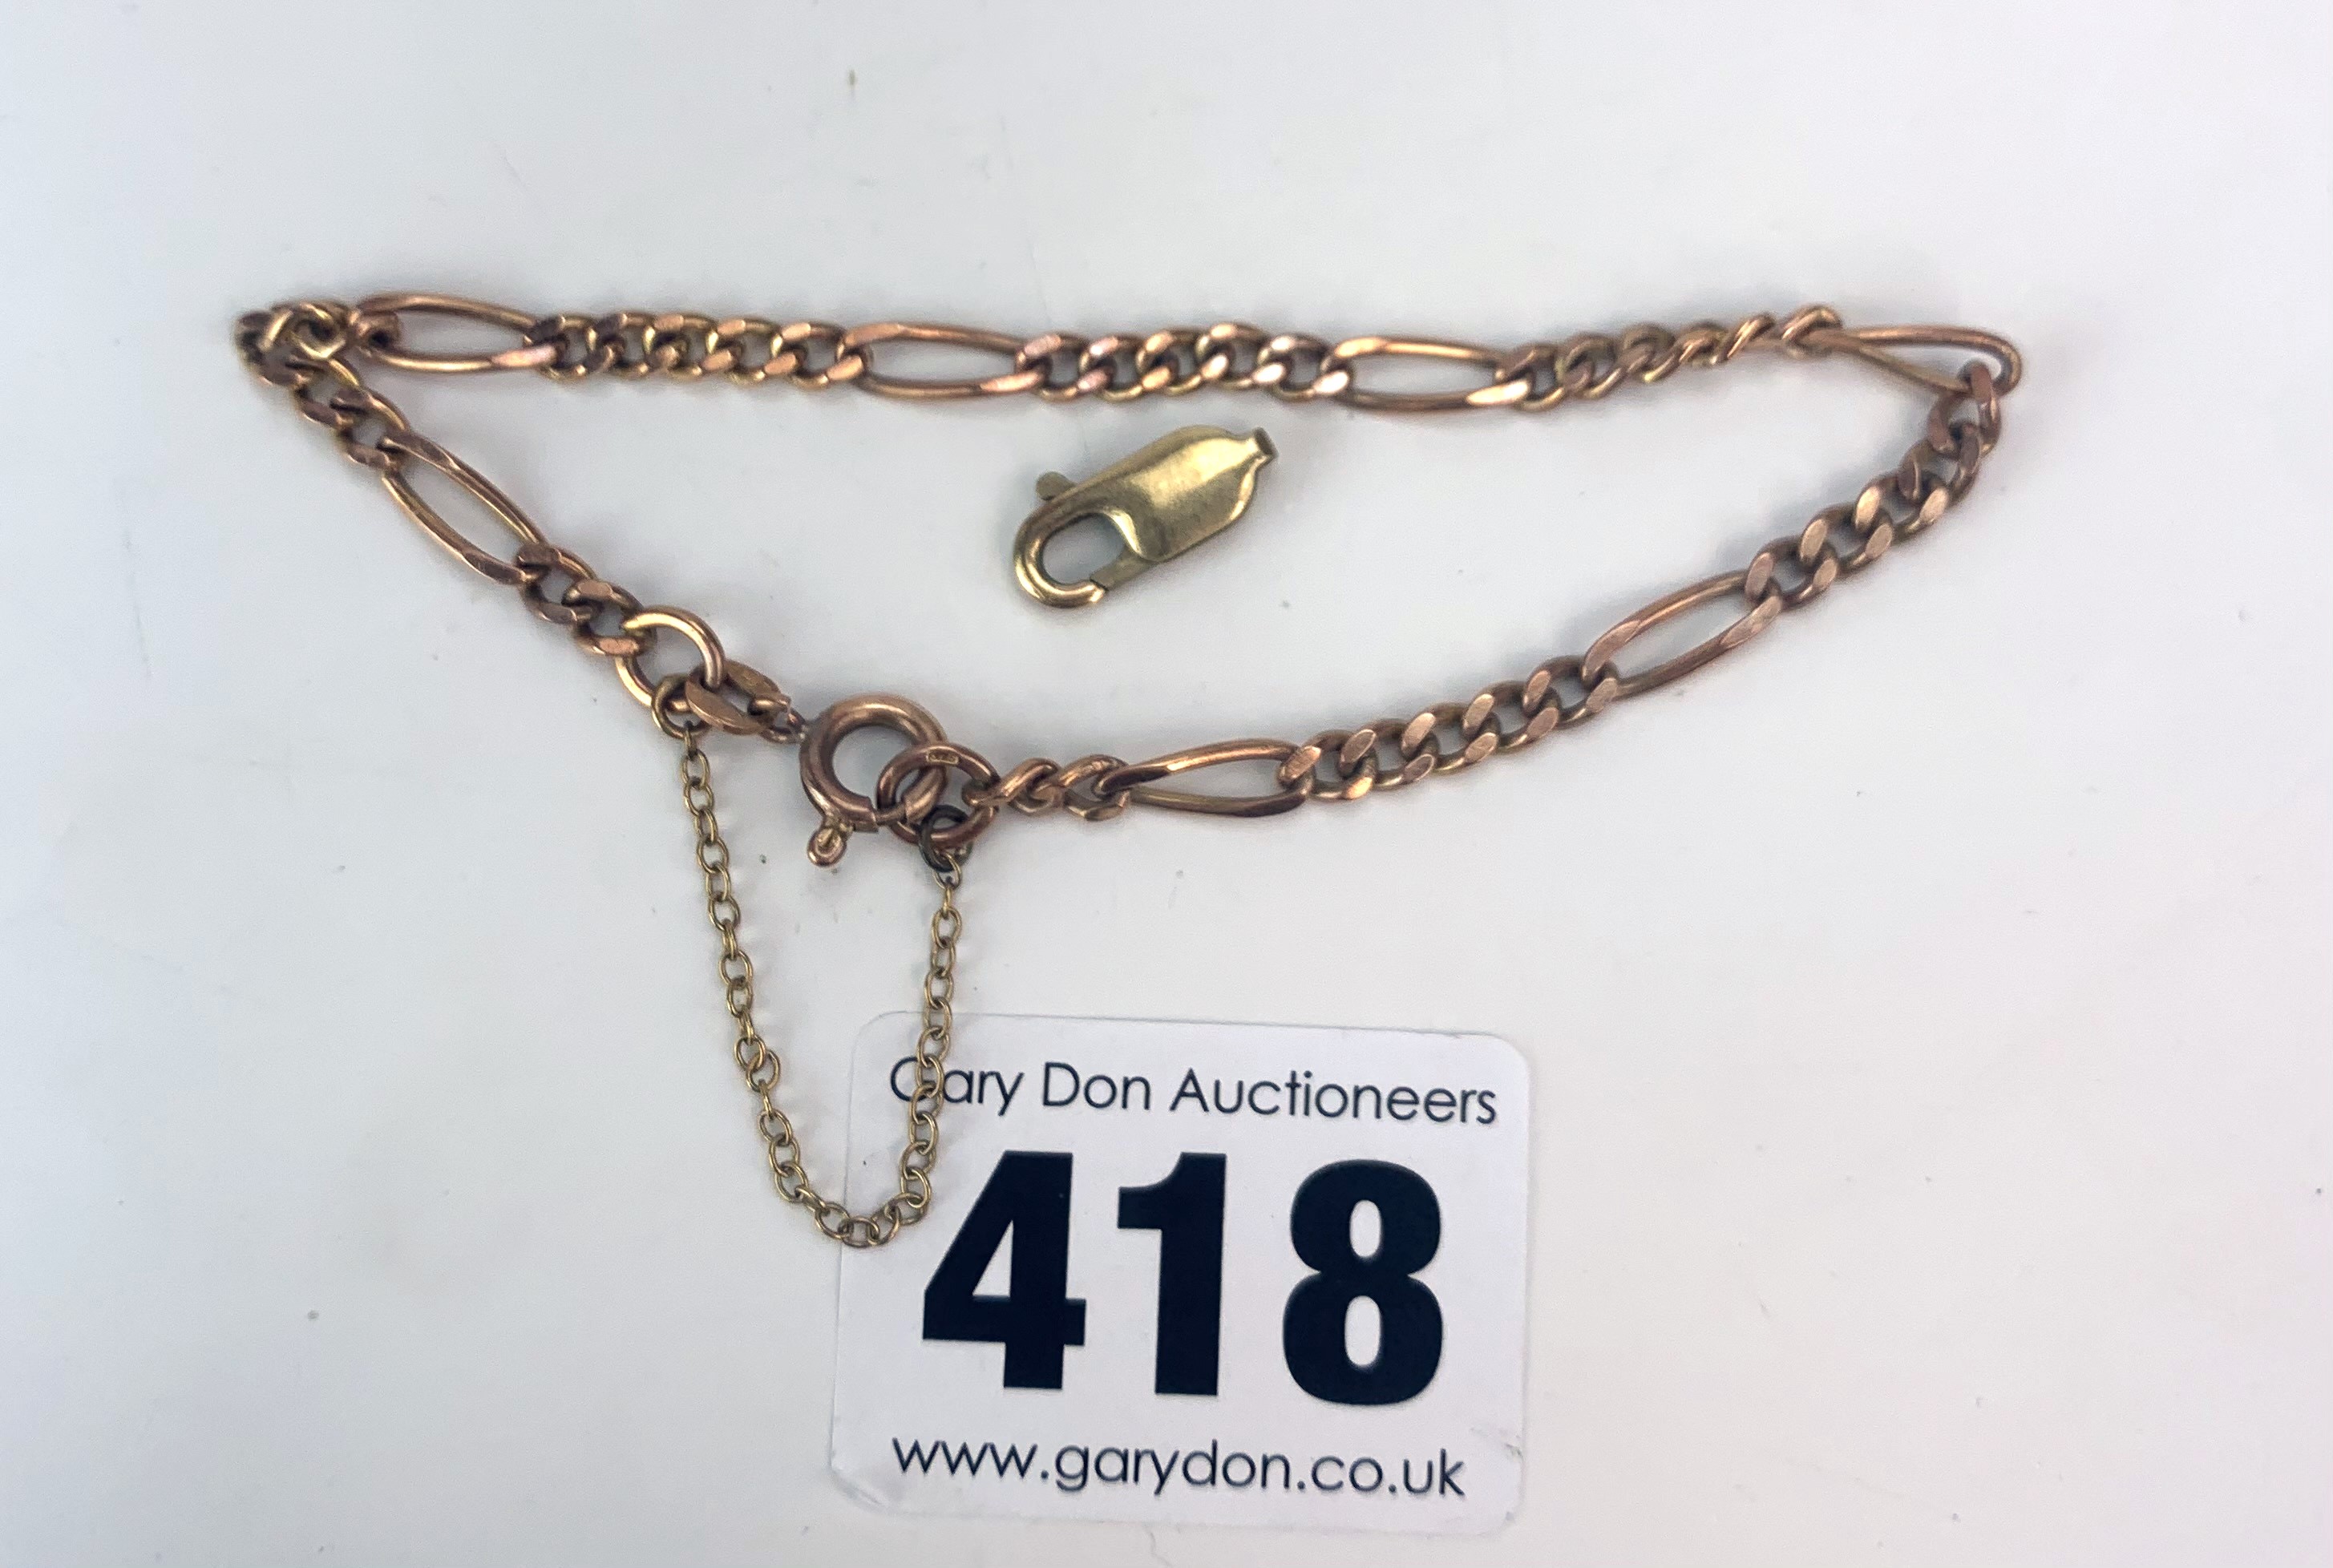 9k gold bracelet - Image 2 of 2